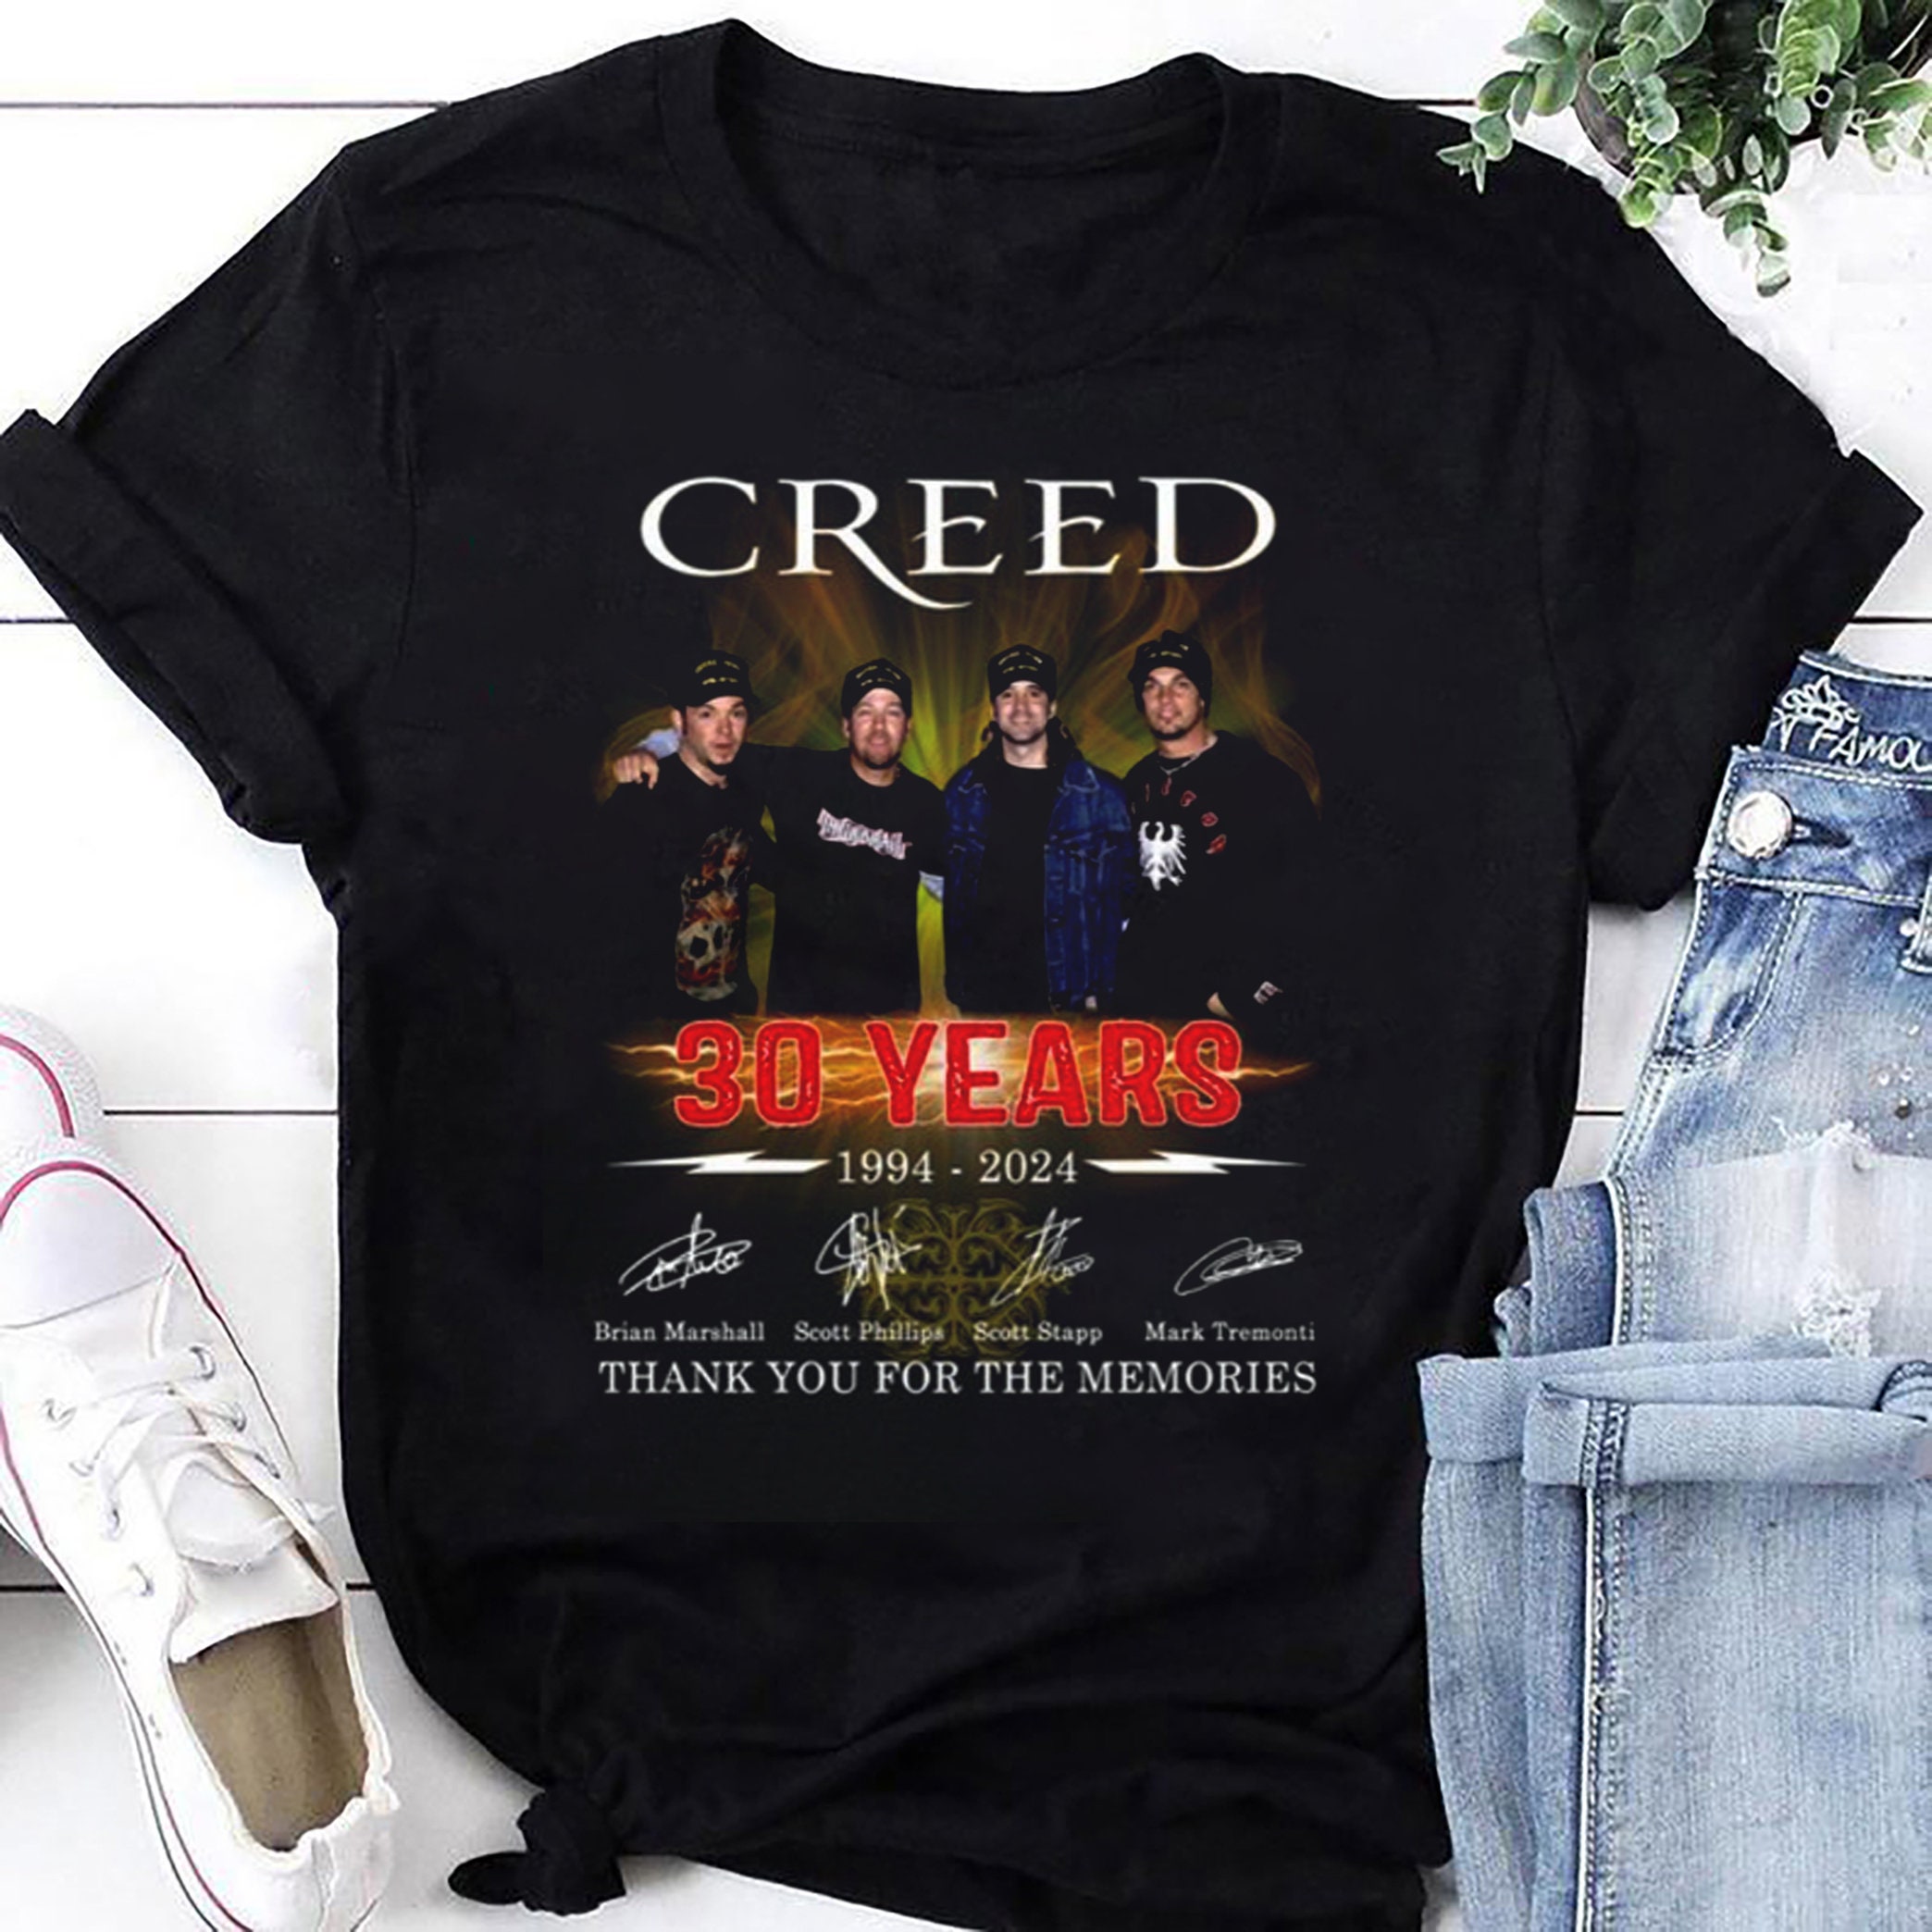 30 Years 1994-2024 Creed Band Signatures Shirt, Creed Band Fan Gift Shirt, Creed 2024 Tour Shirt